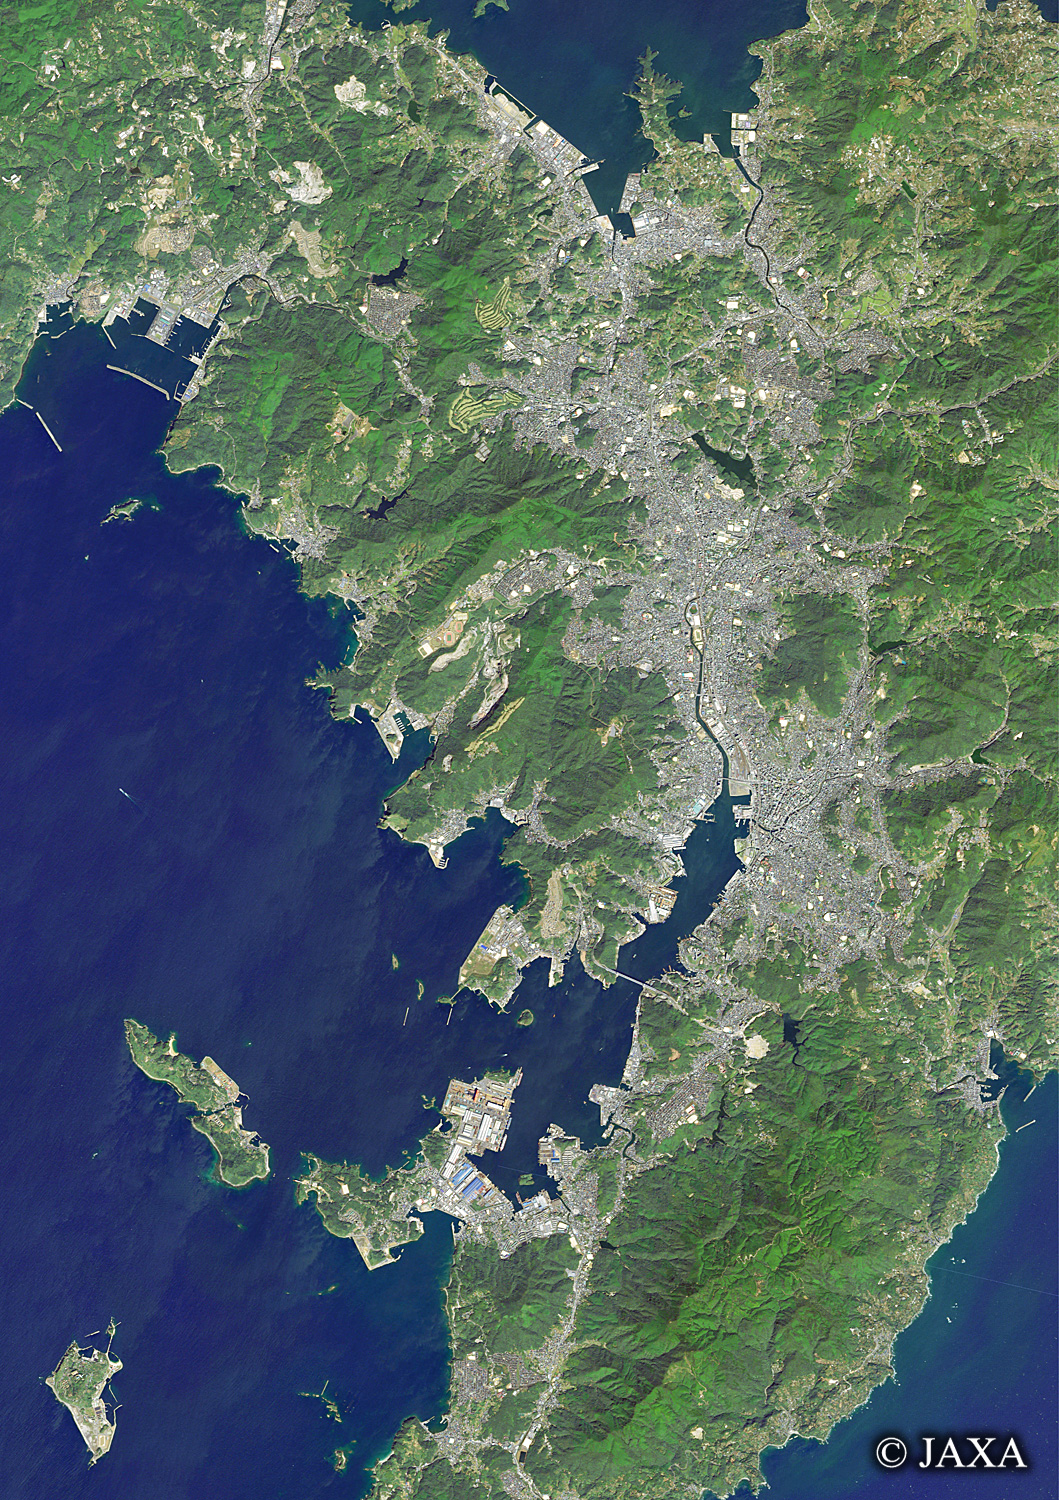 だいちから見た日本の都市 長崎市周辺:衛星画像